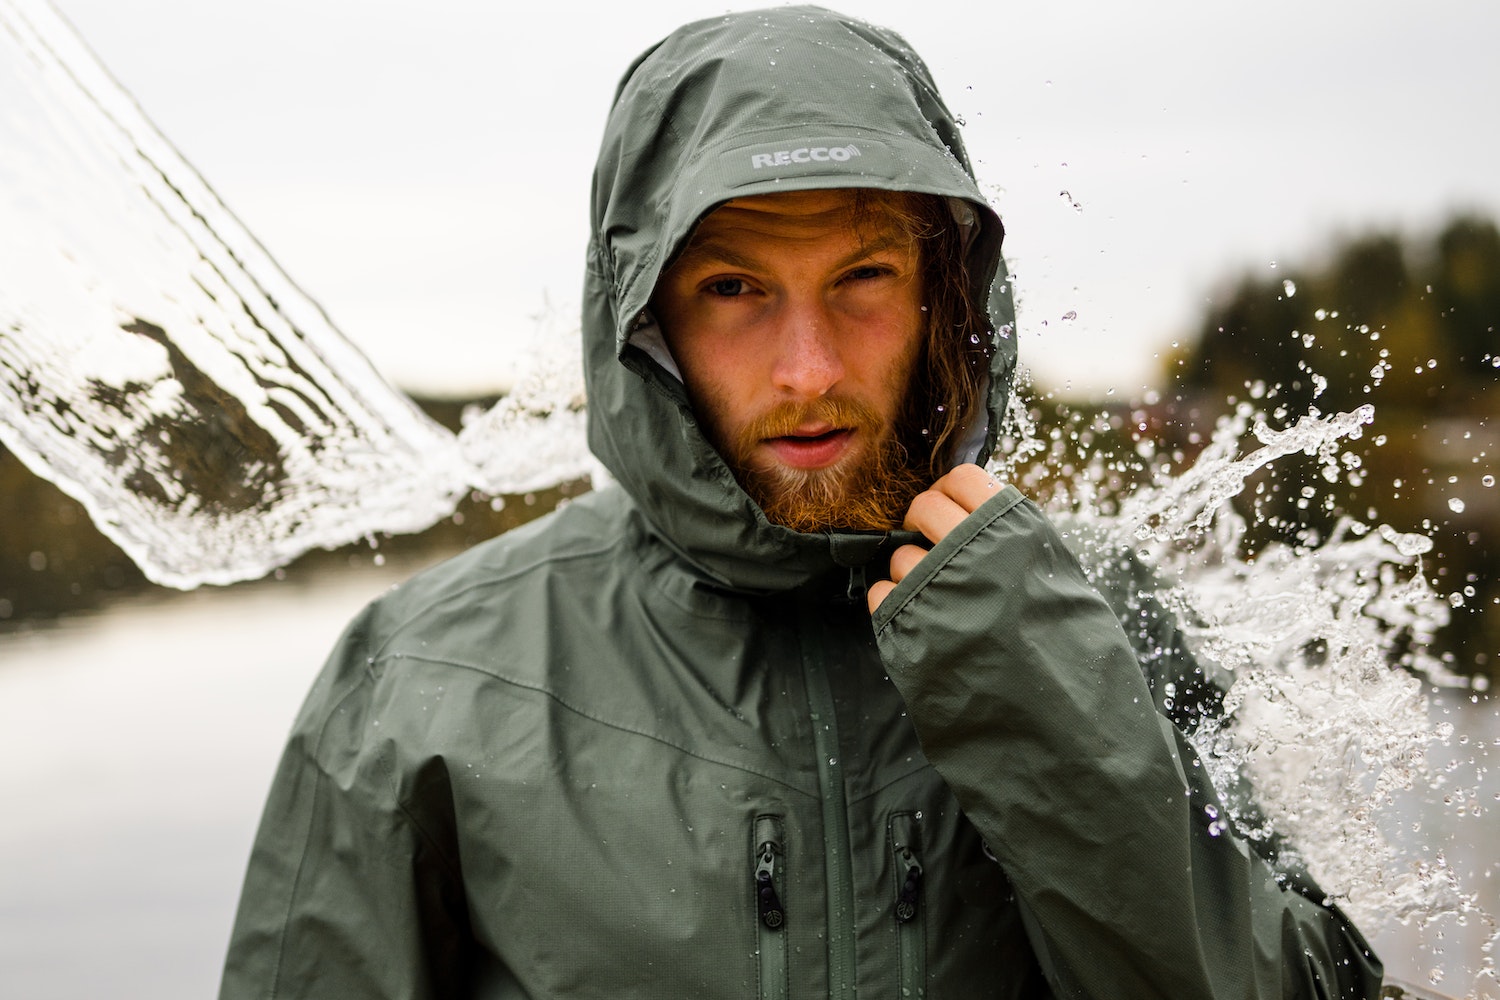 Tear on waterproof jacket: how to fix it - Breaking Latest News